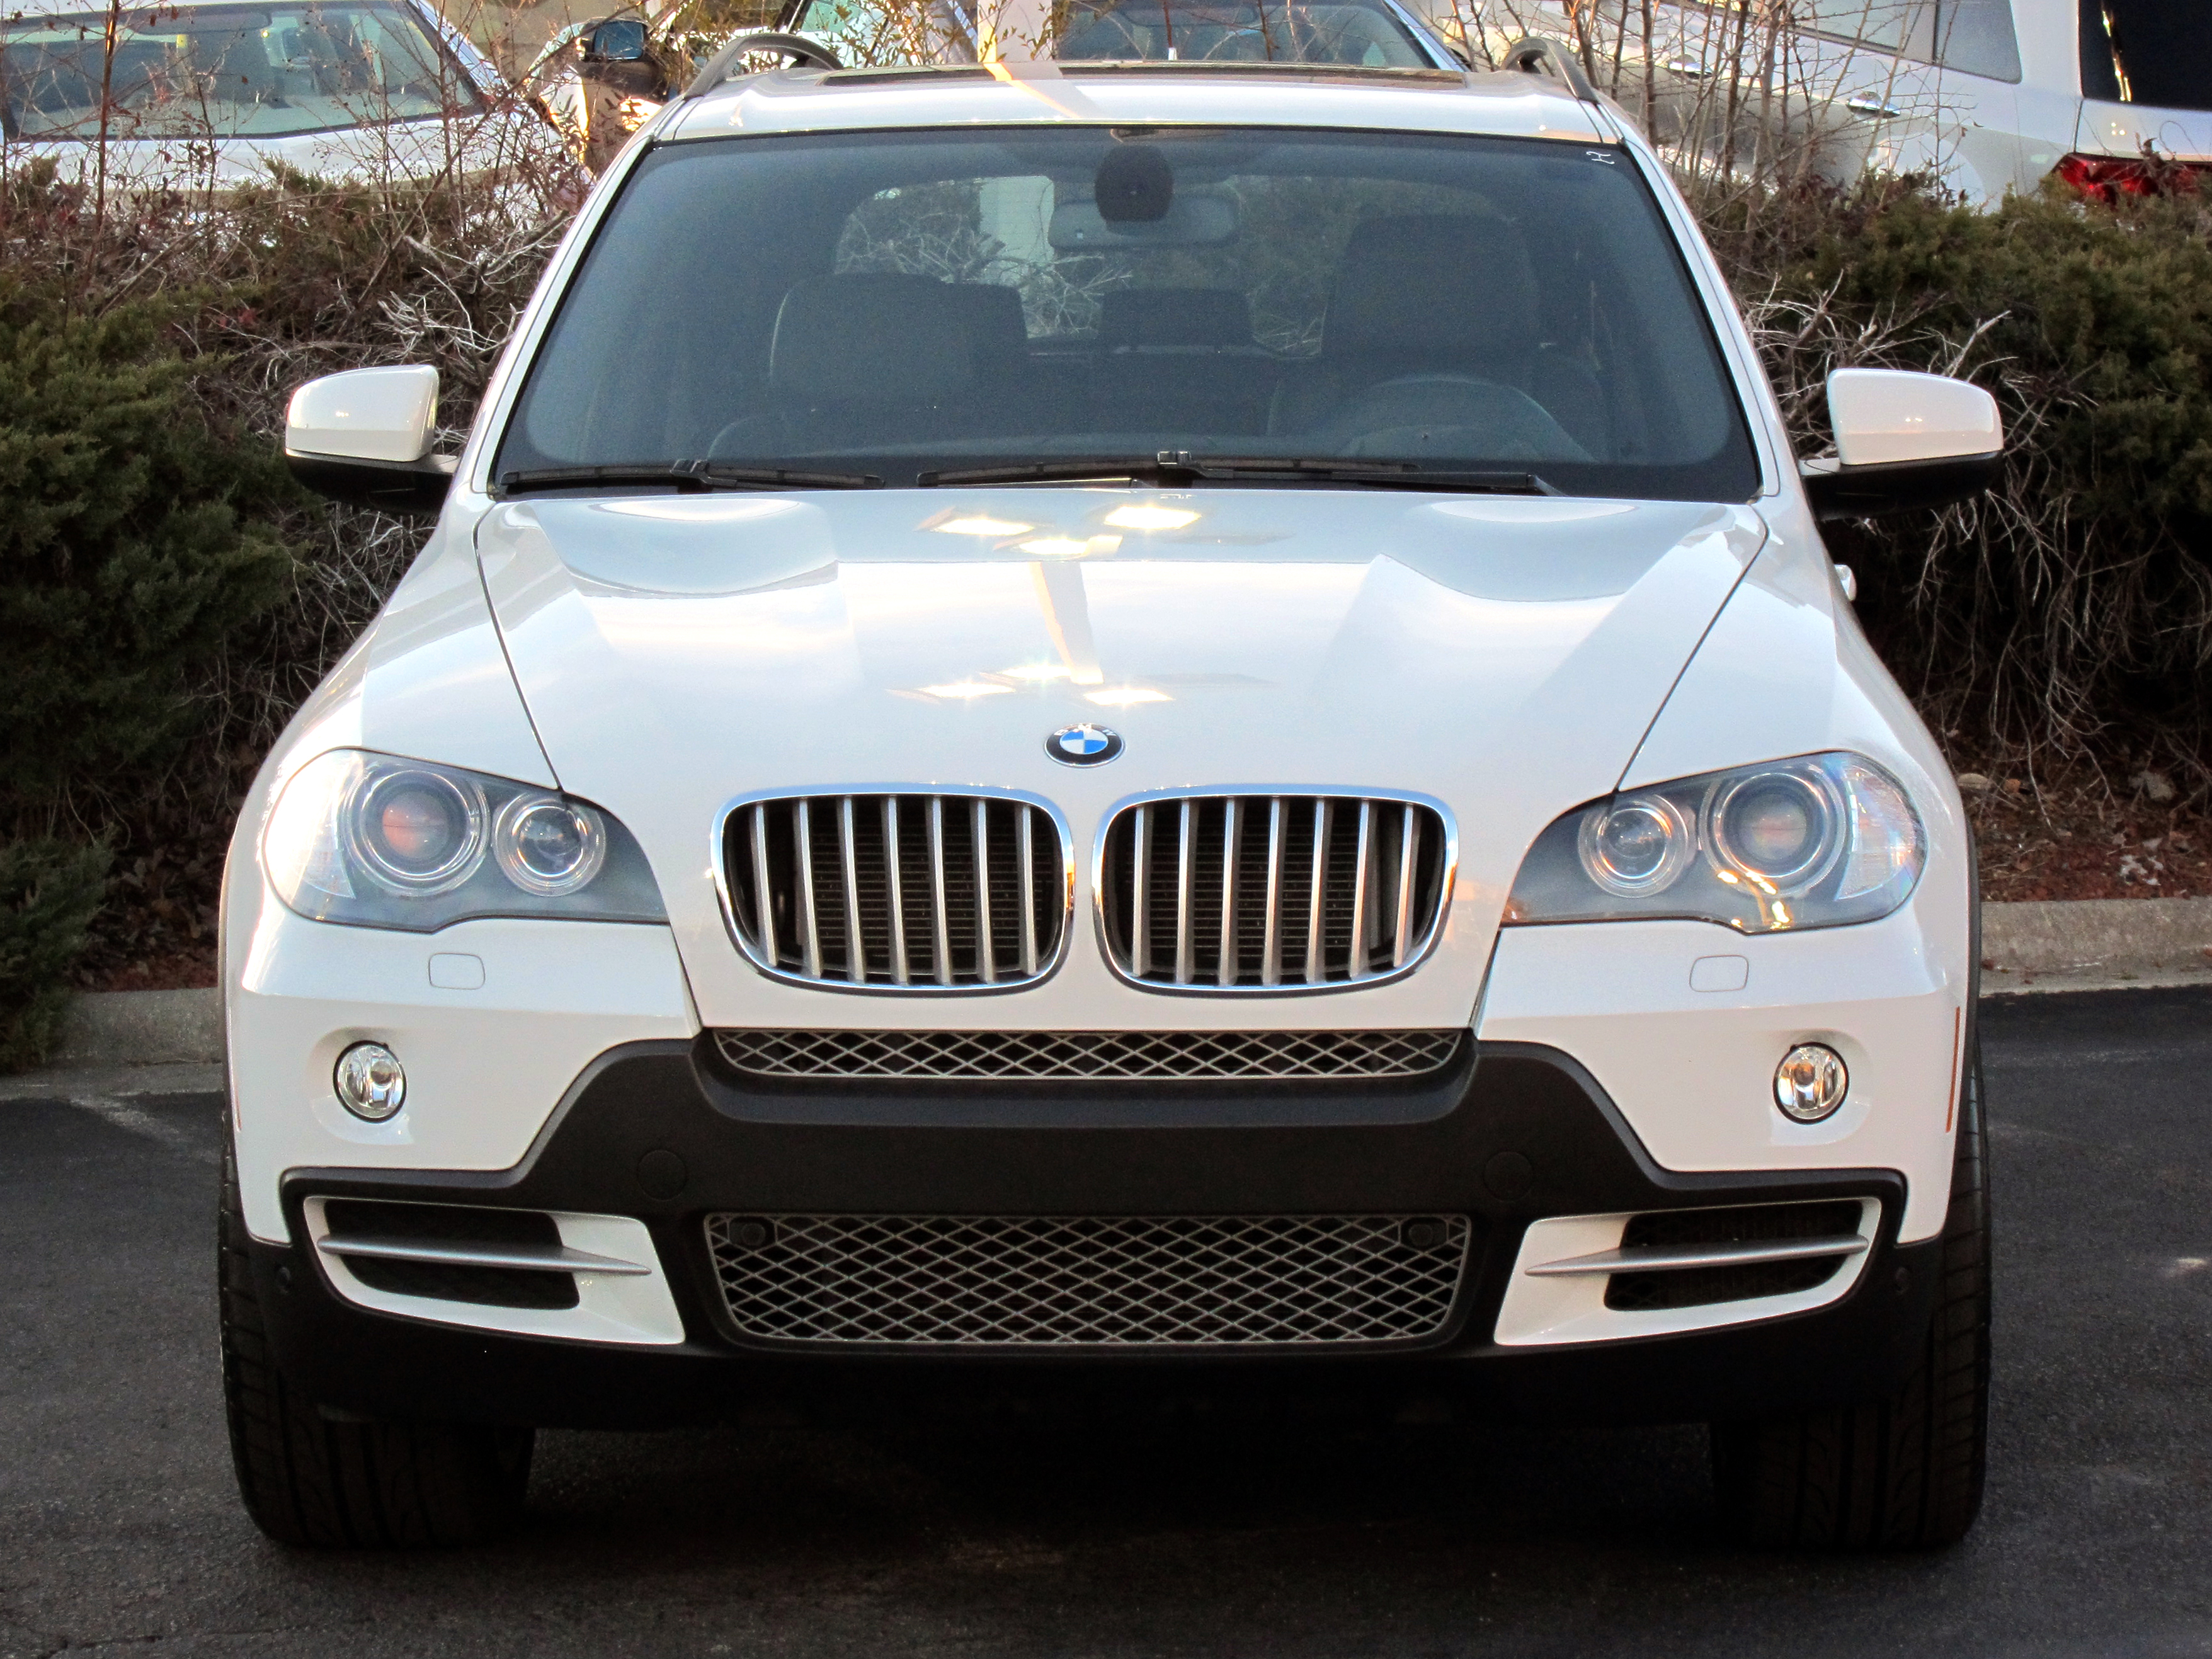 BMW X5 4.8i White | Flickr - Photo Sharing!